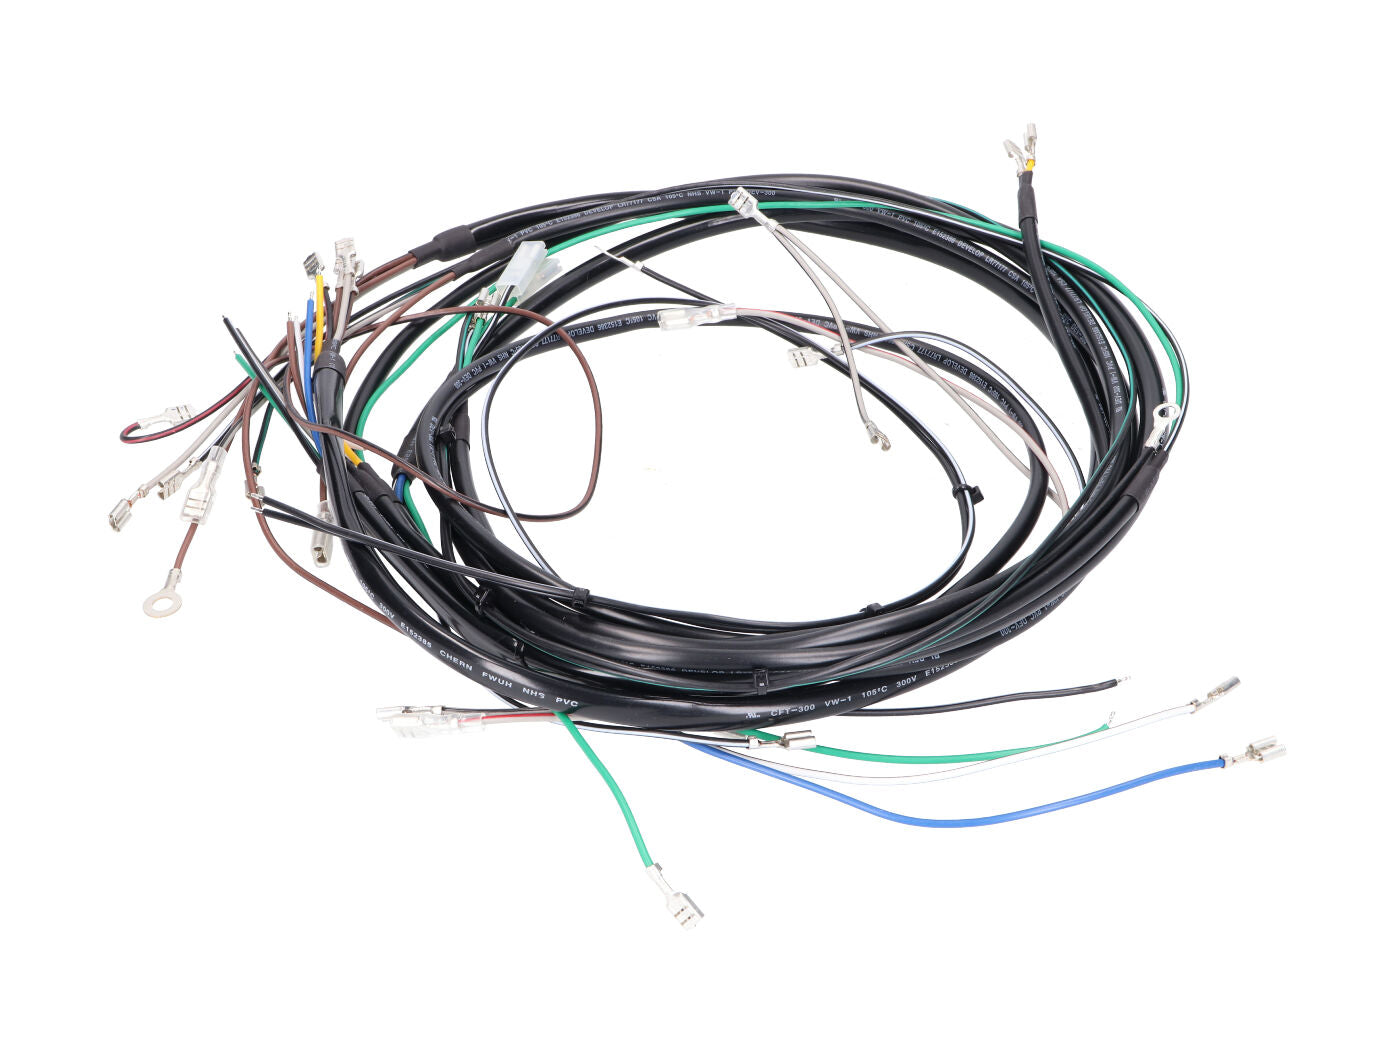 Kabelbaum / Kabelsatz mit Schaltplan für Simson S50, S51, S70 6v 12v